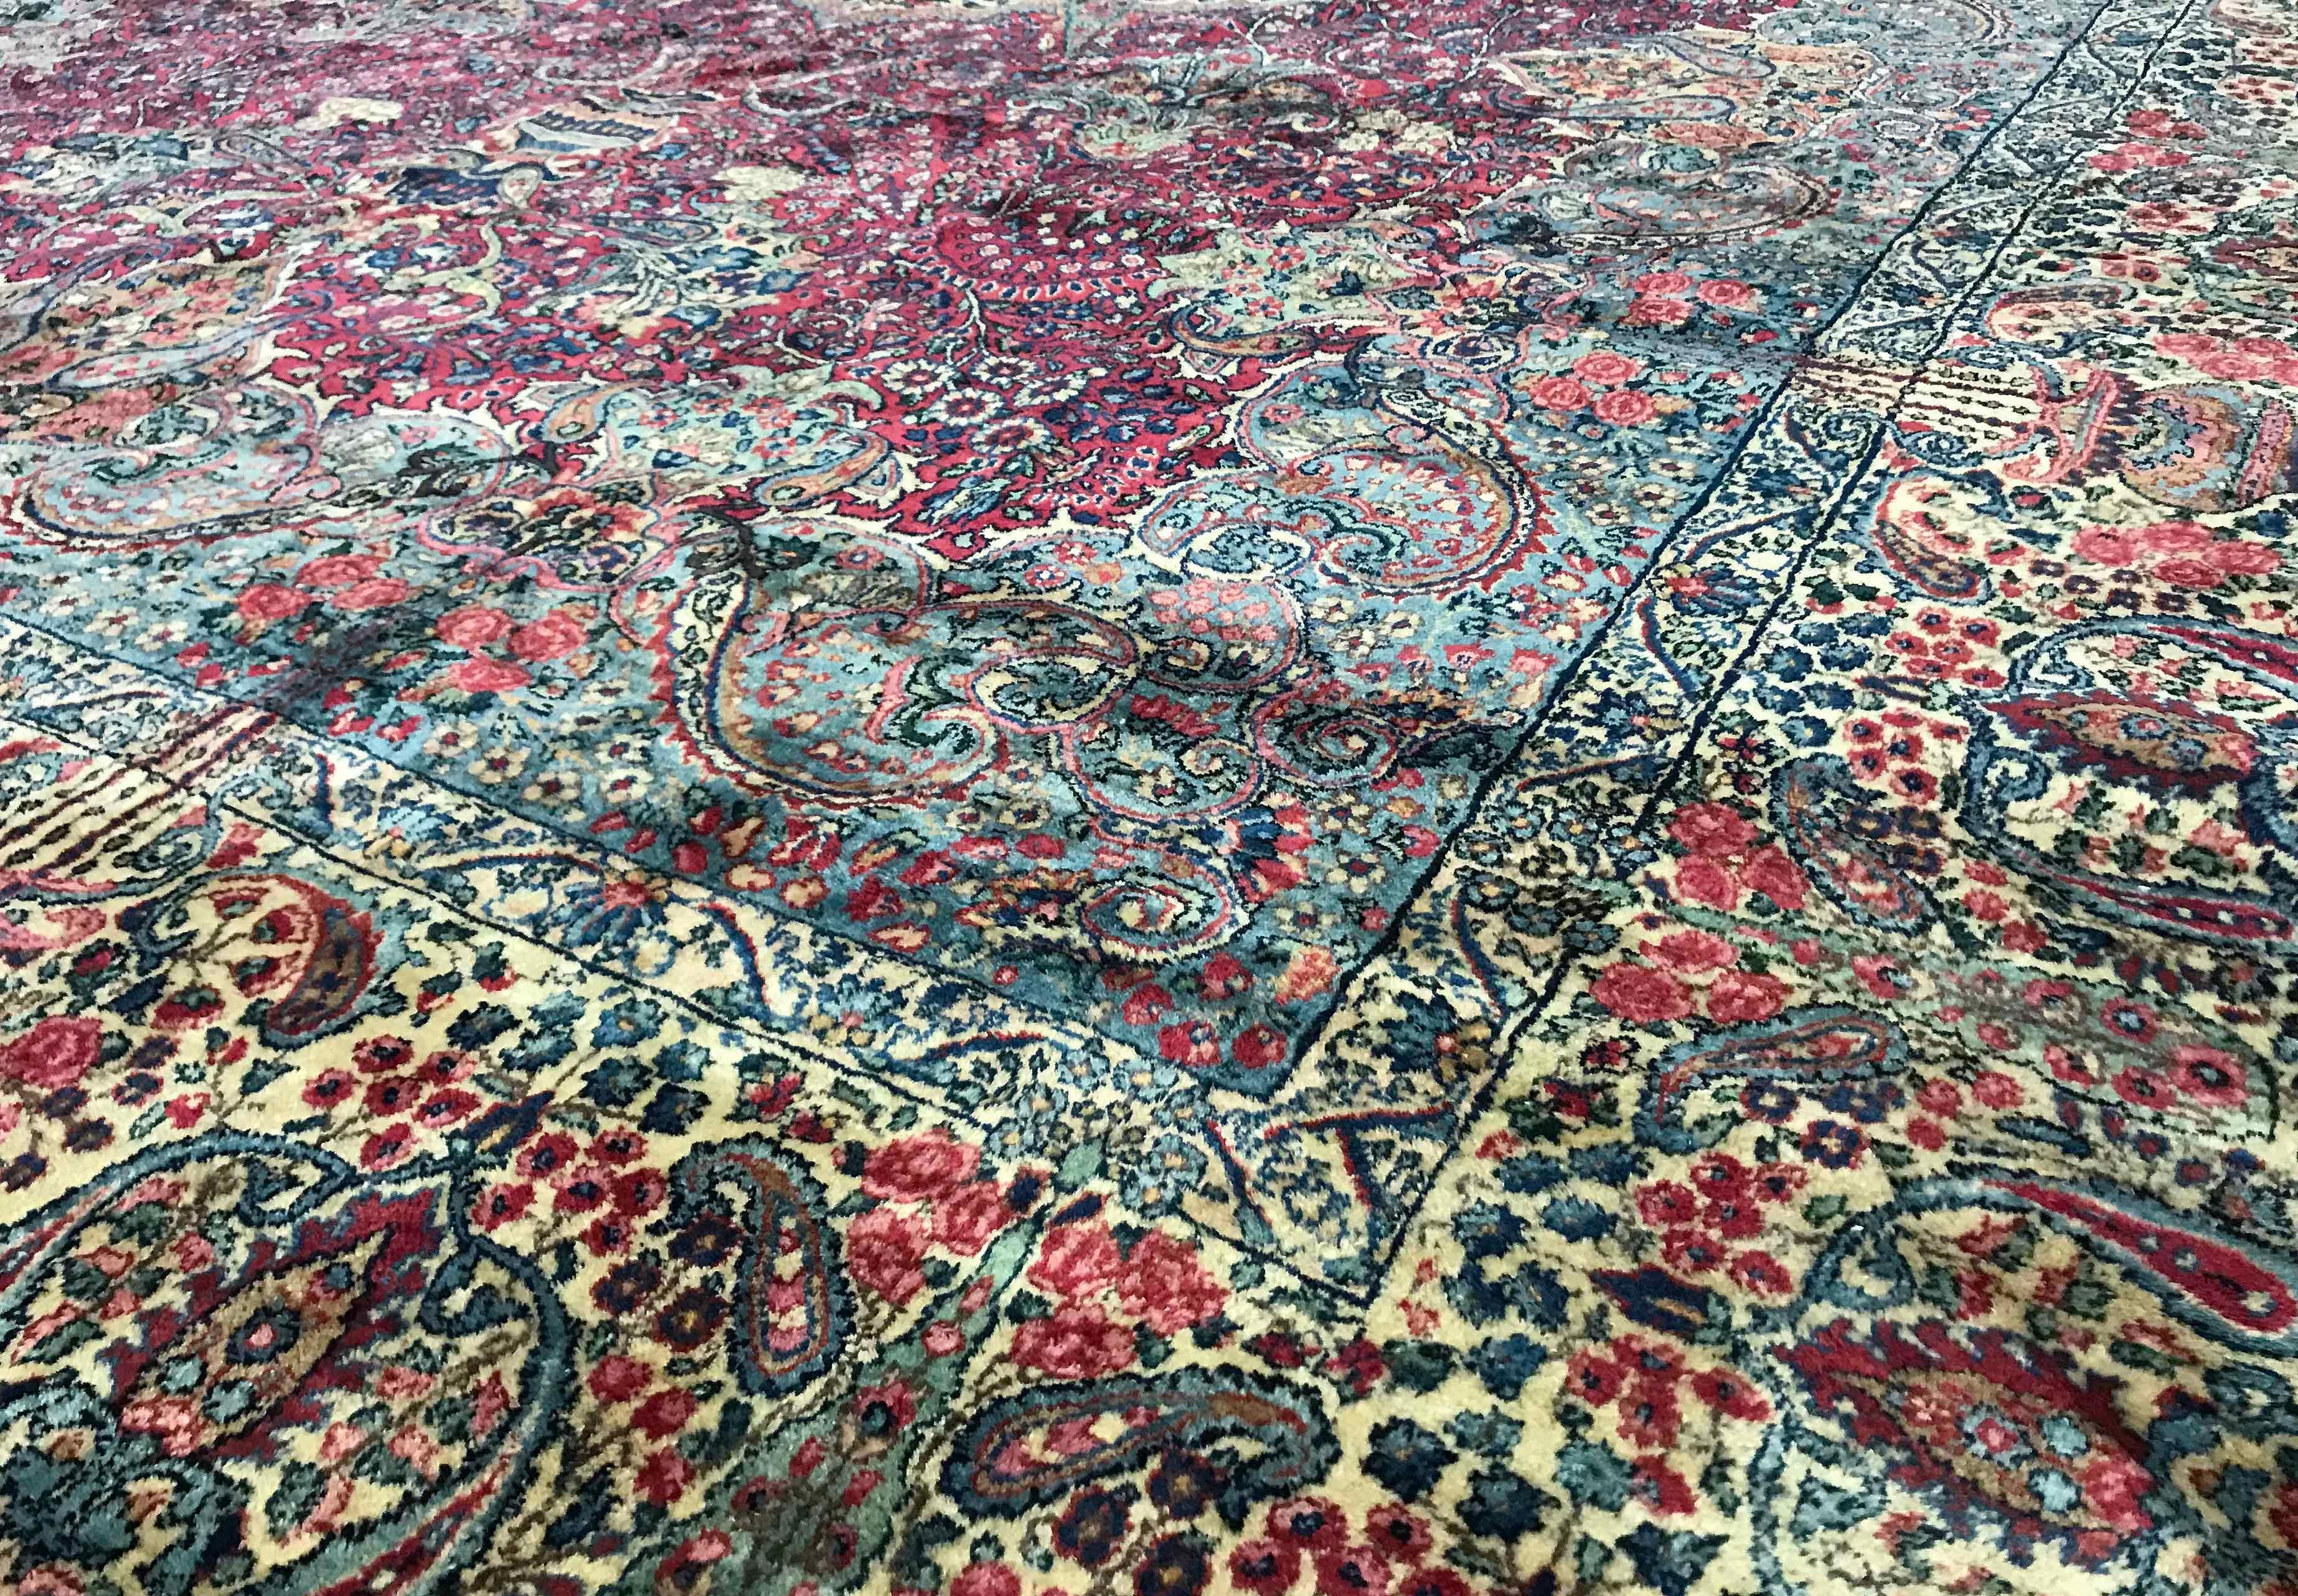 Tapis persan Kerman vintage, circa 1940. Il s'agit vraiment d'un tapis remarquable, le design complexe qui semble remplir chaque coin de cette pièce est un hommage au savoir-faire du designer et des tisserands, l'effet global donnant un sentiment de